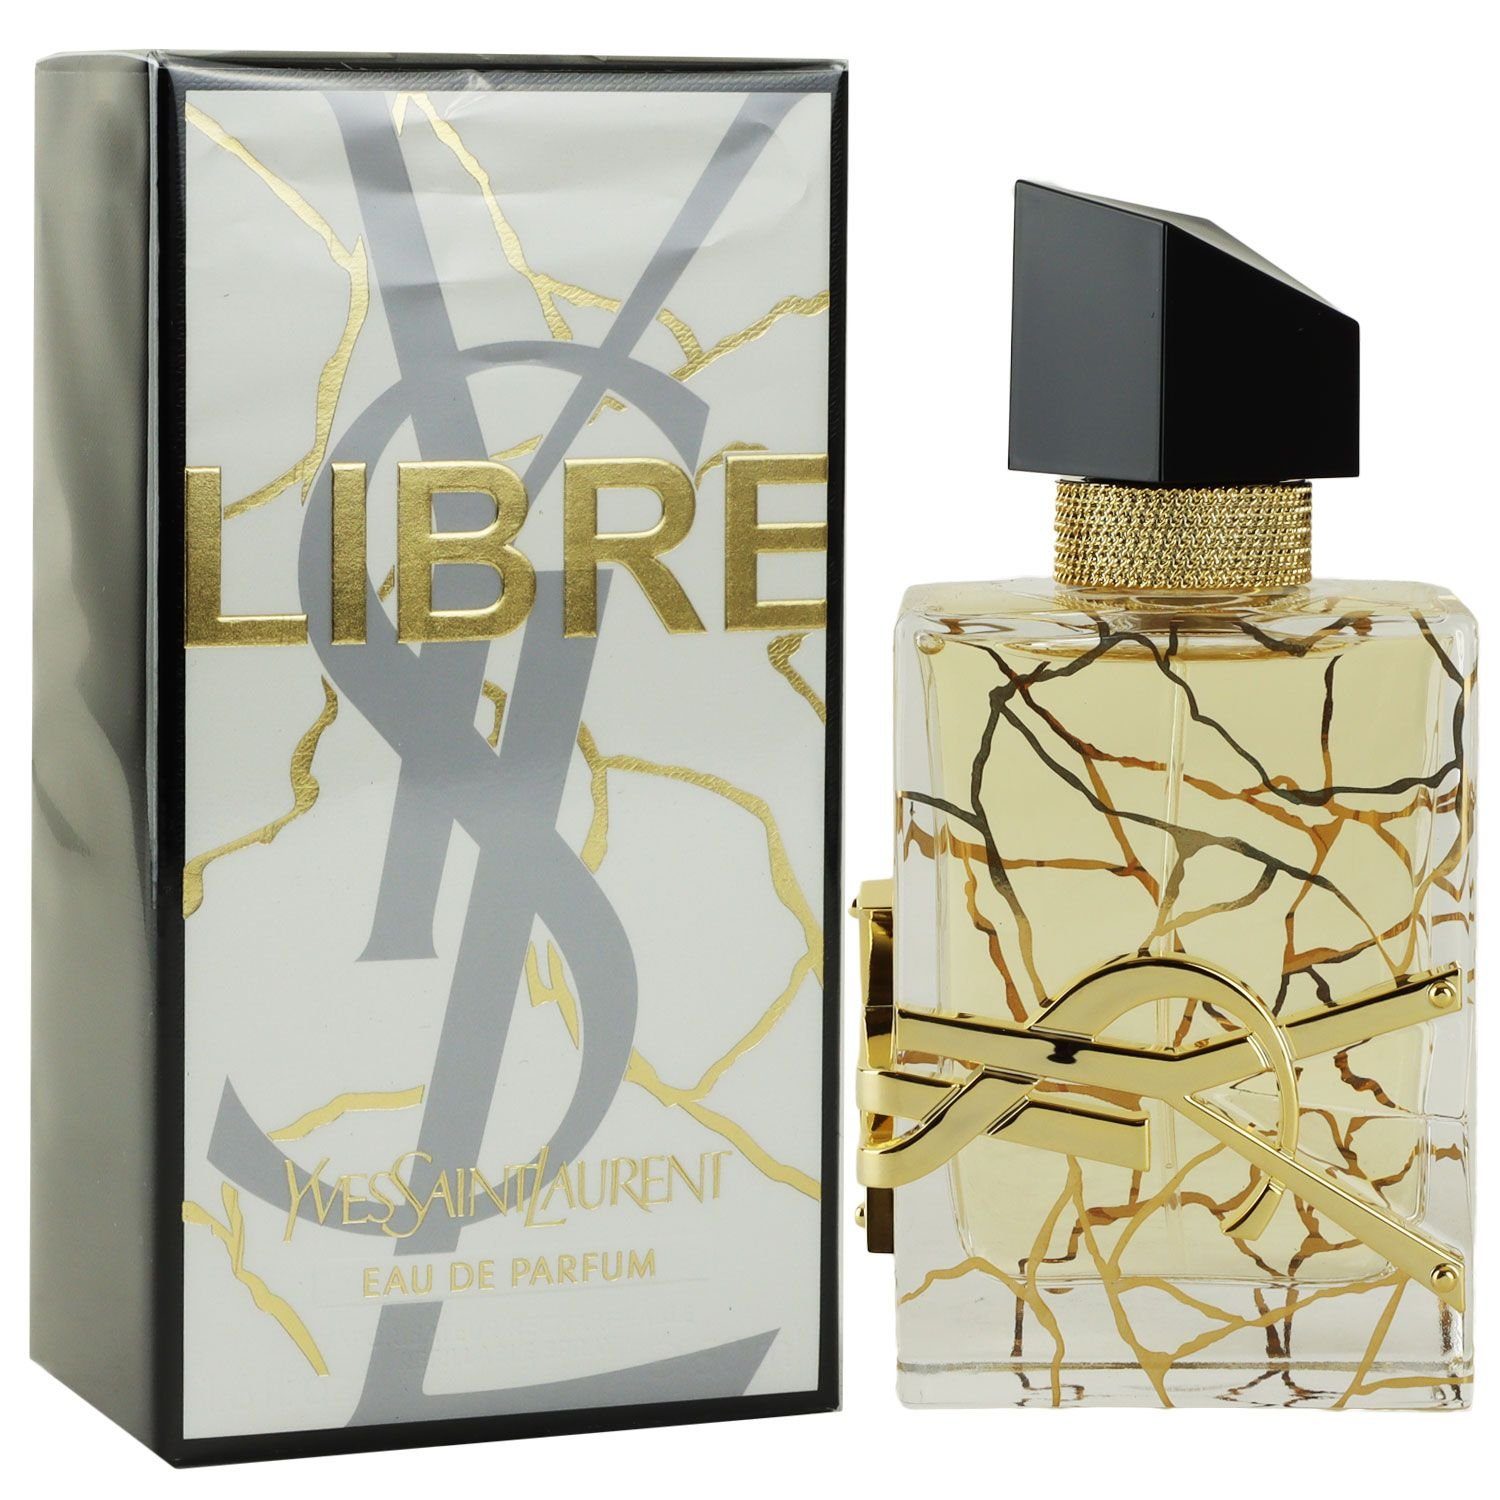 YVES SAINT LAURENT Eau de Parfum Yves Saint Laurent YSL Libre Eau de Parfum EDP Limited Edition 50 ml | Eau de Parfum